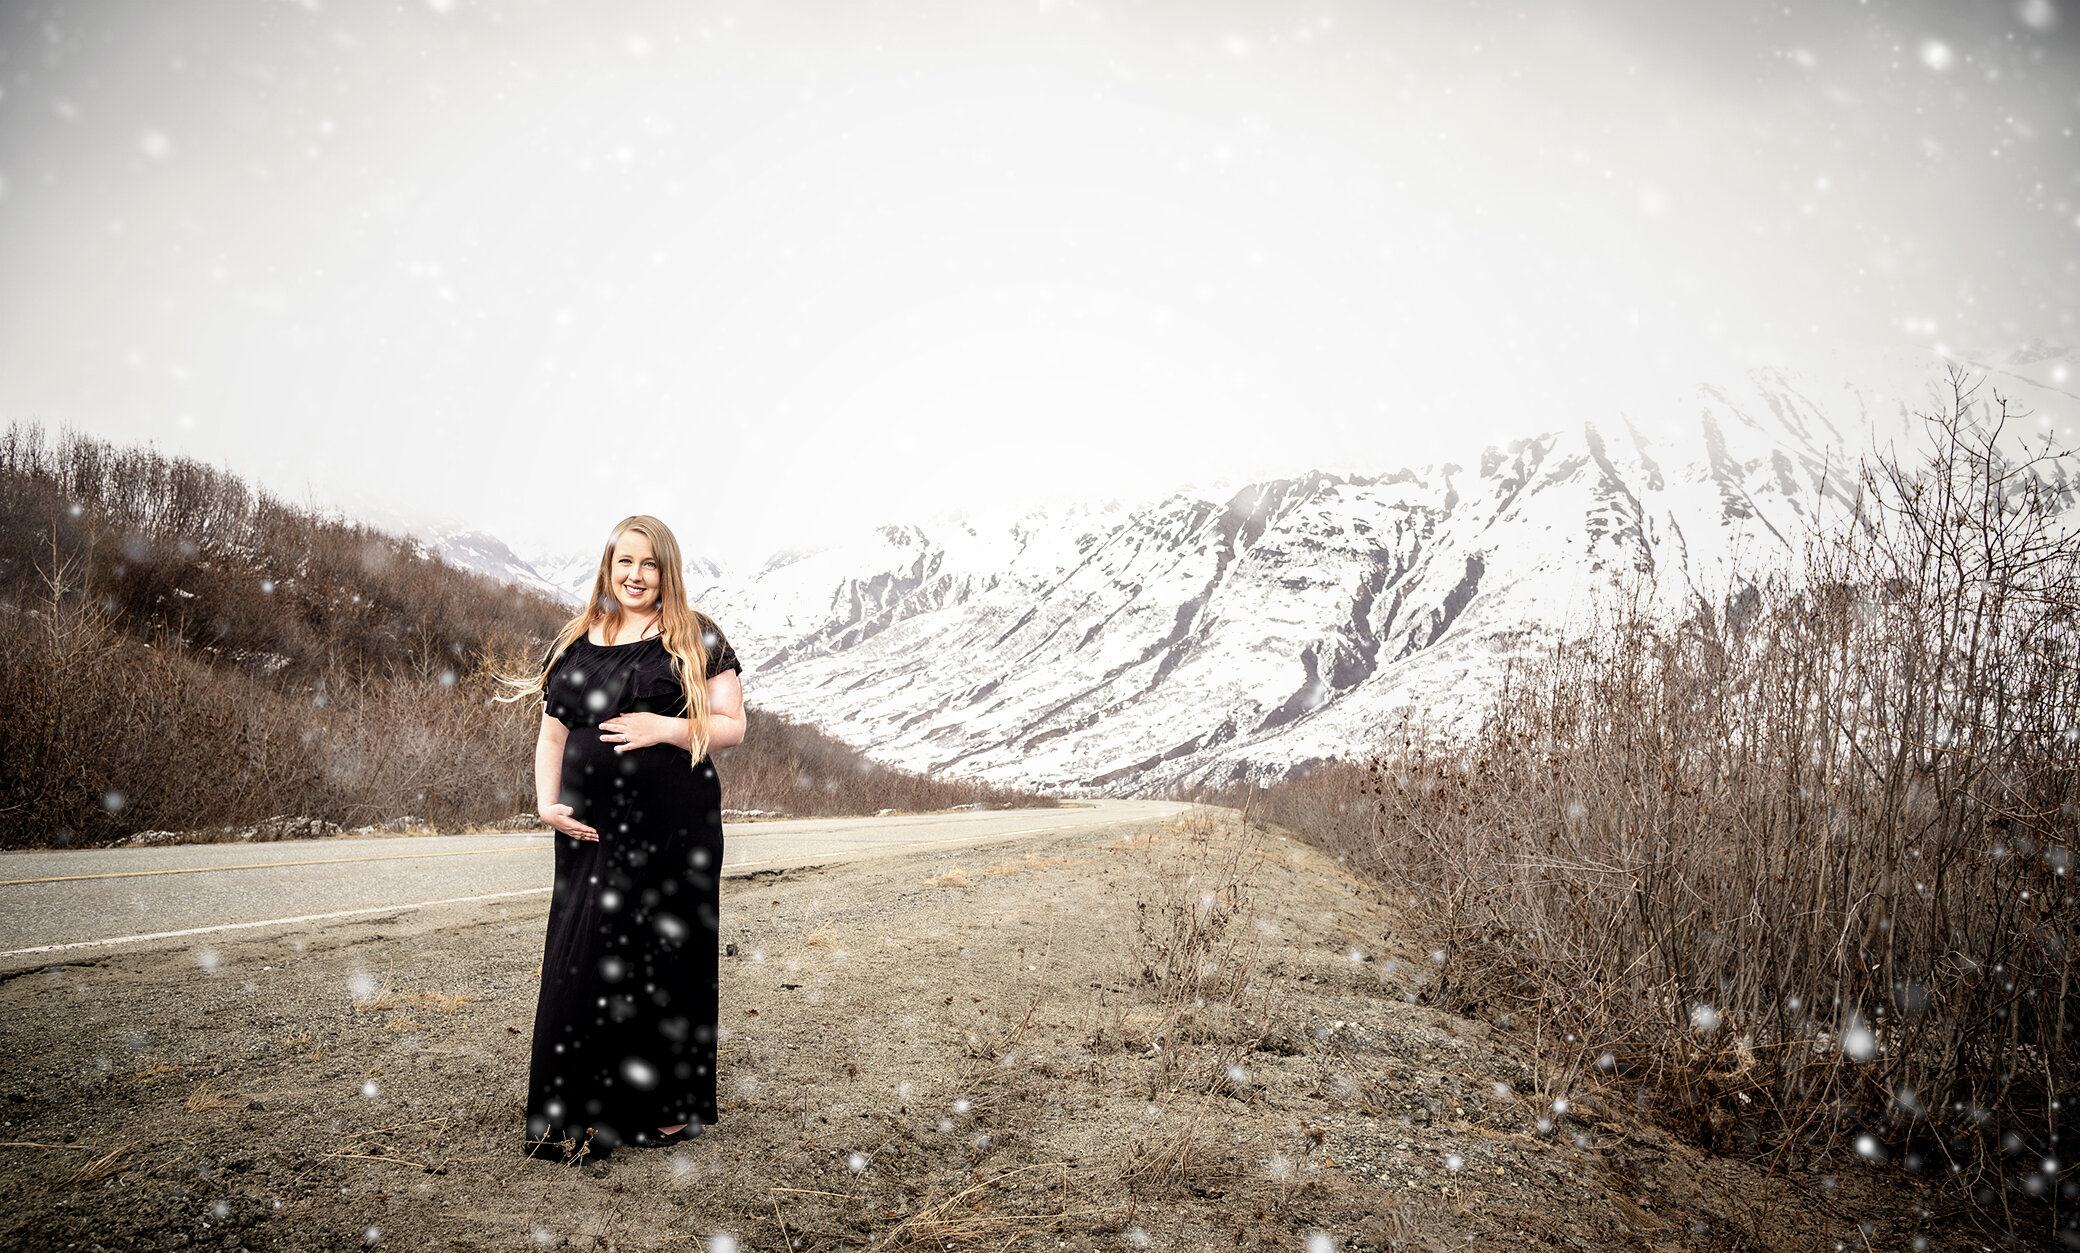 WEB_CarolLeeJaynePortraits_Kaitlyn_Maternity_Alaska_2021-14.jpg